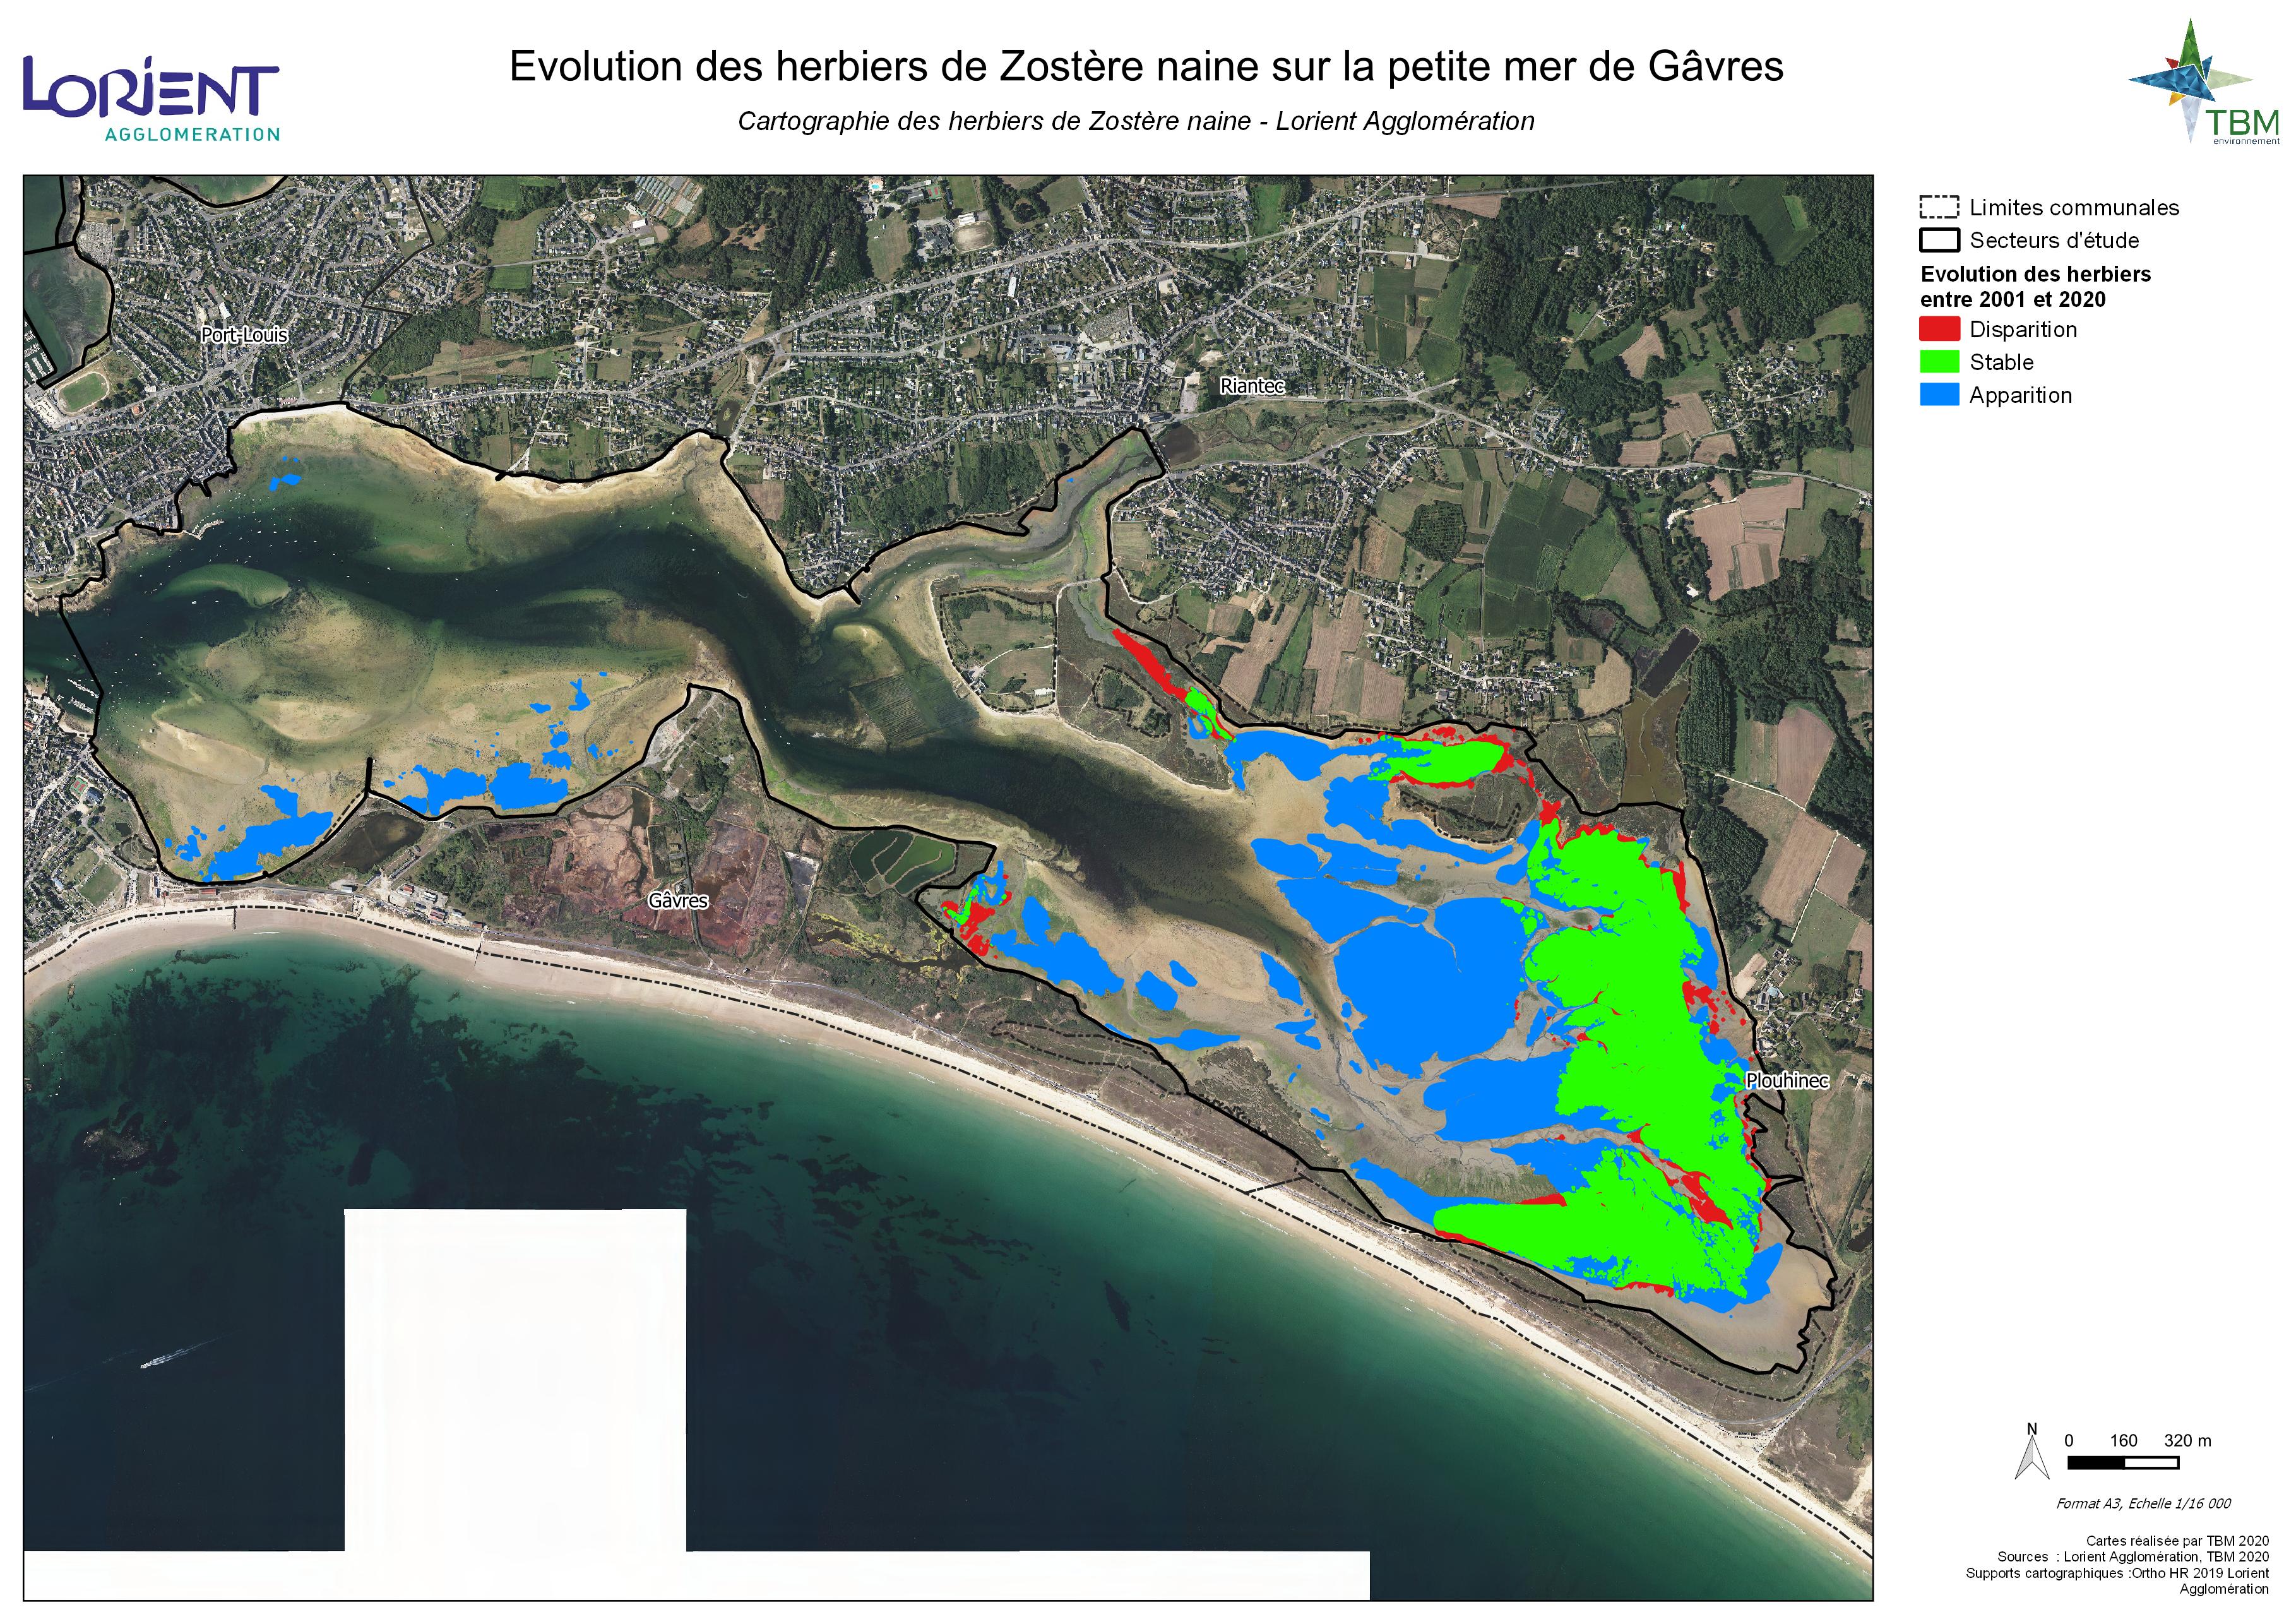 Cartographie des herbiers de zostères naines de la Petite Mer de Gâvres (TBM, 2020)